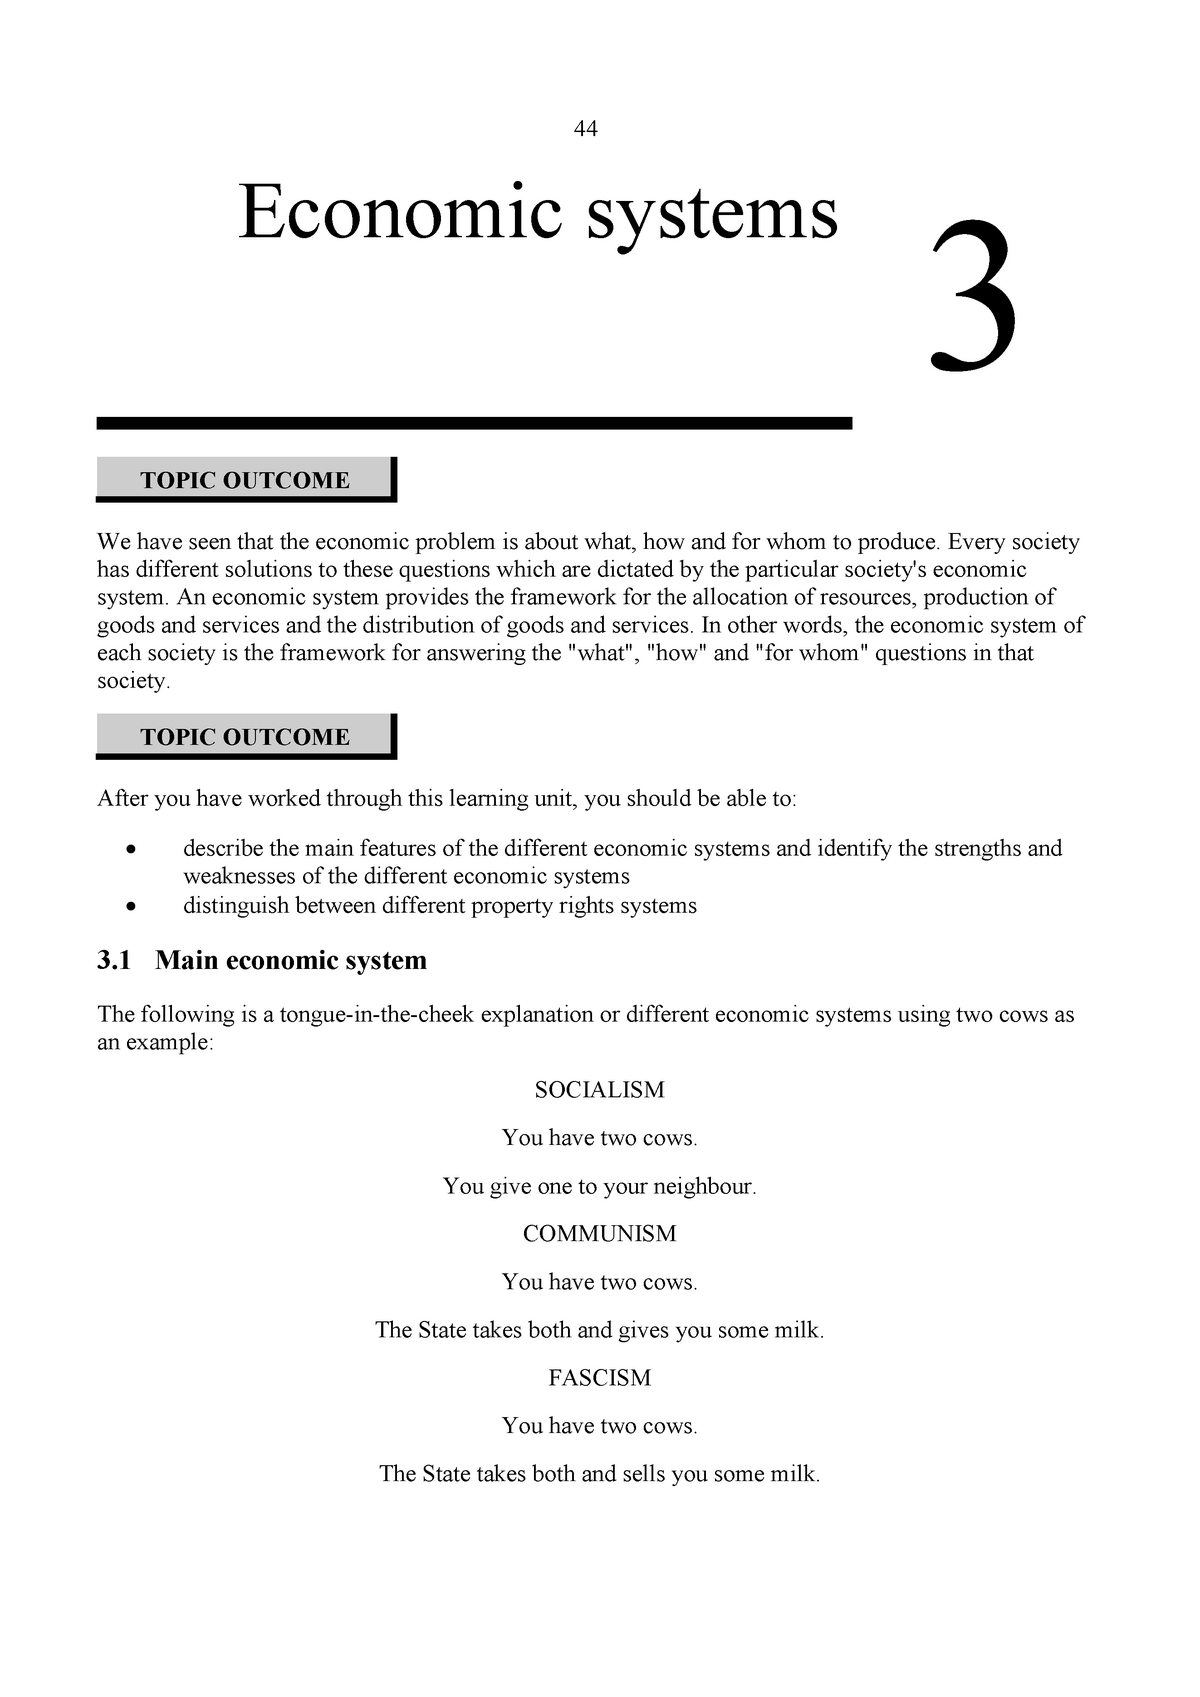 ecs1501 assignment 3 pdf download